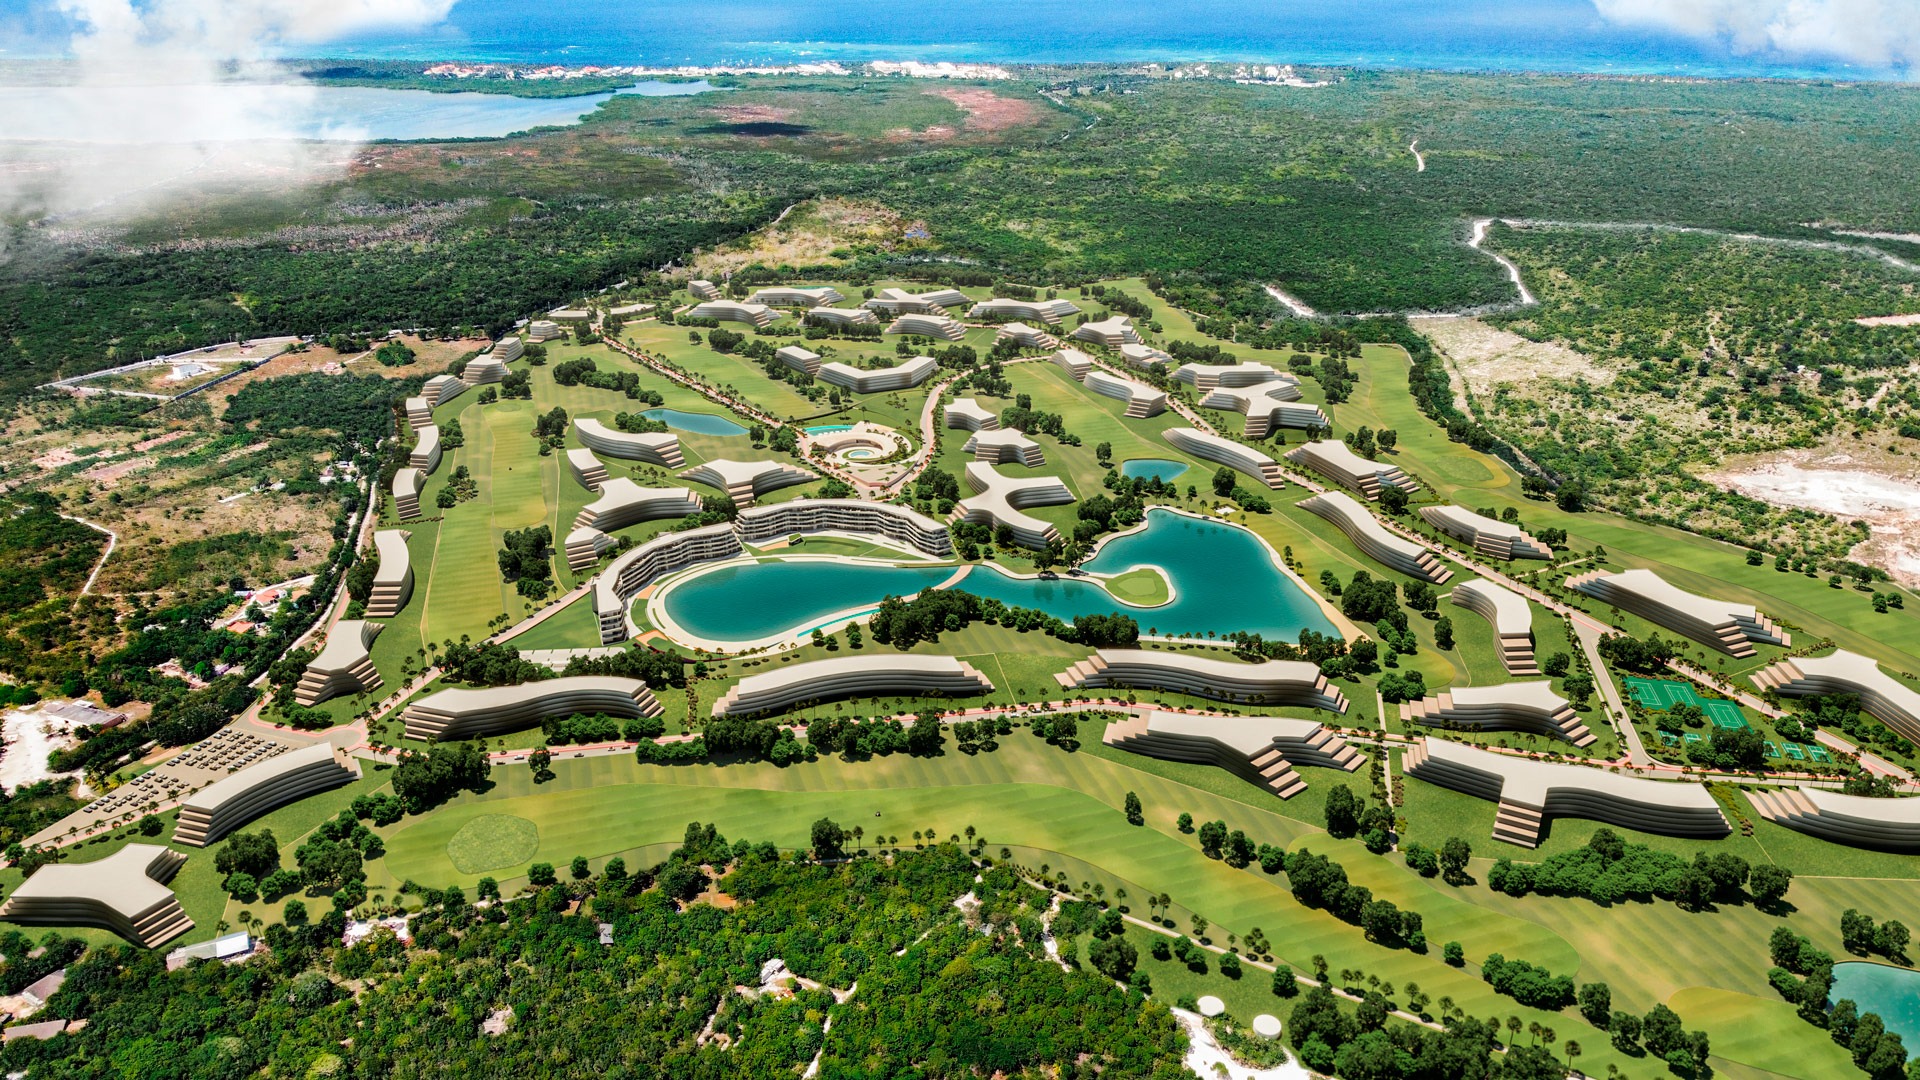 Oportunidad de inversión en el paraíso: Terrenos para desarrollo inmobiliario en Punta Cana